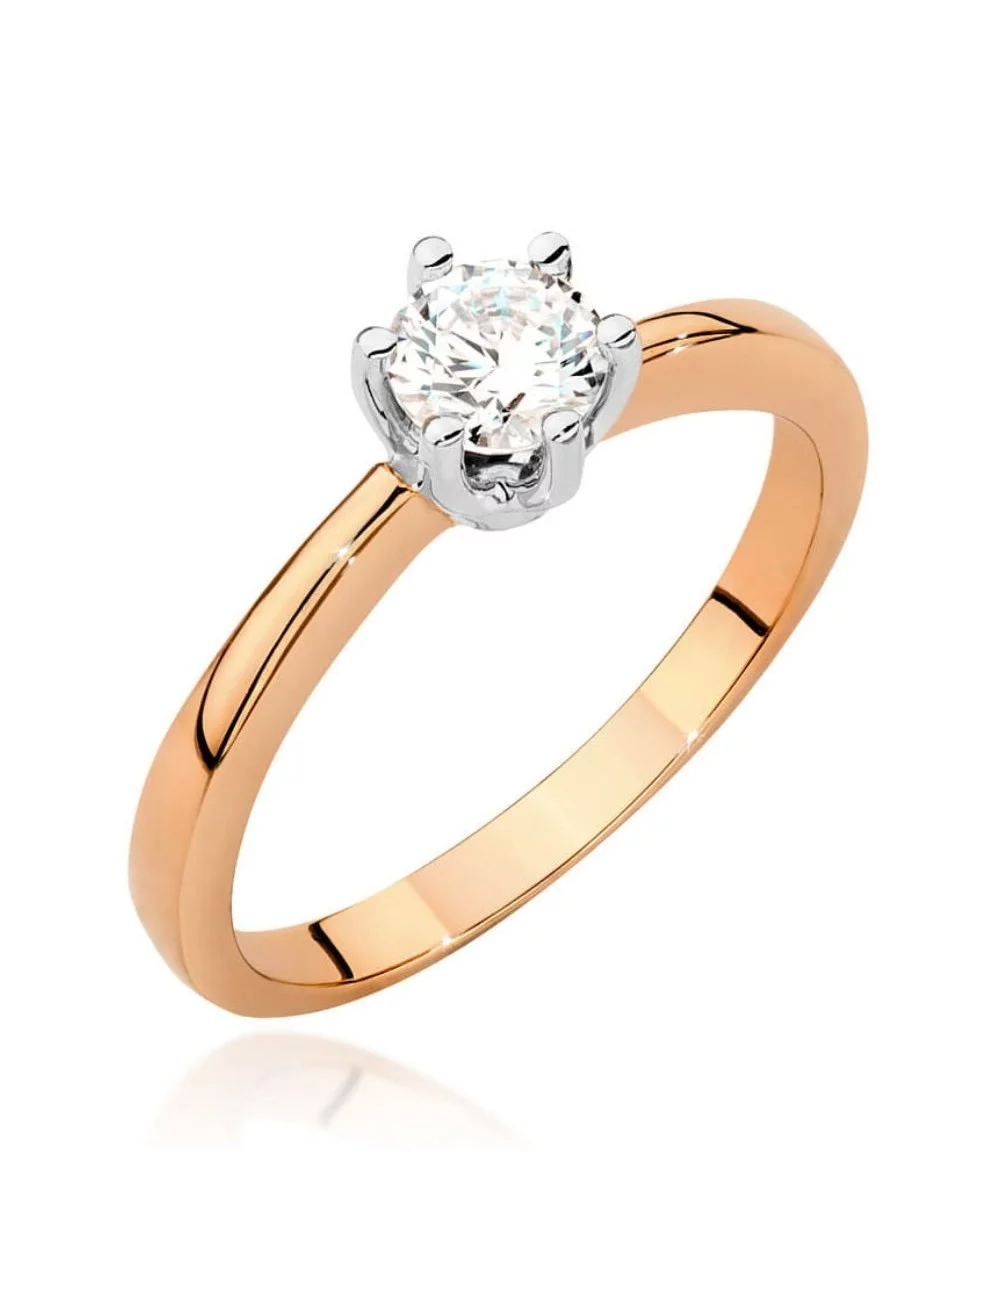 Deimantinė Elegancija - klasikinis raudono aukso žiedas su deimantu